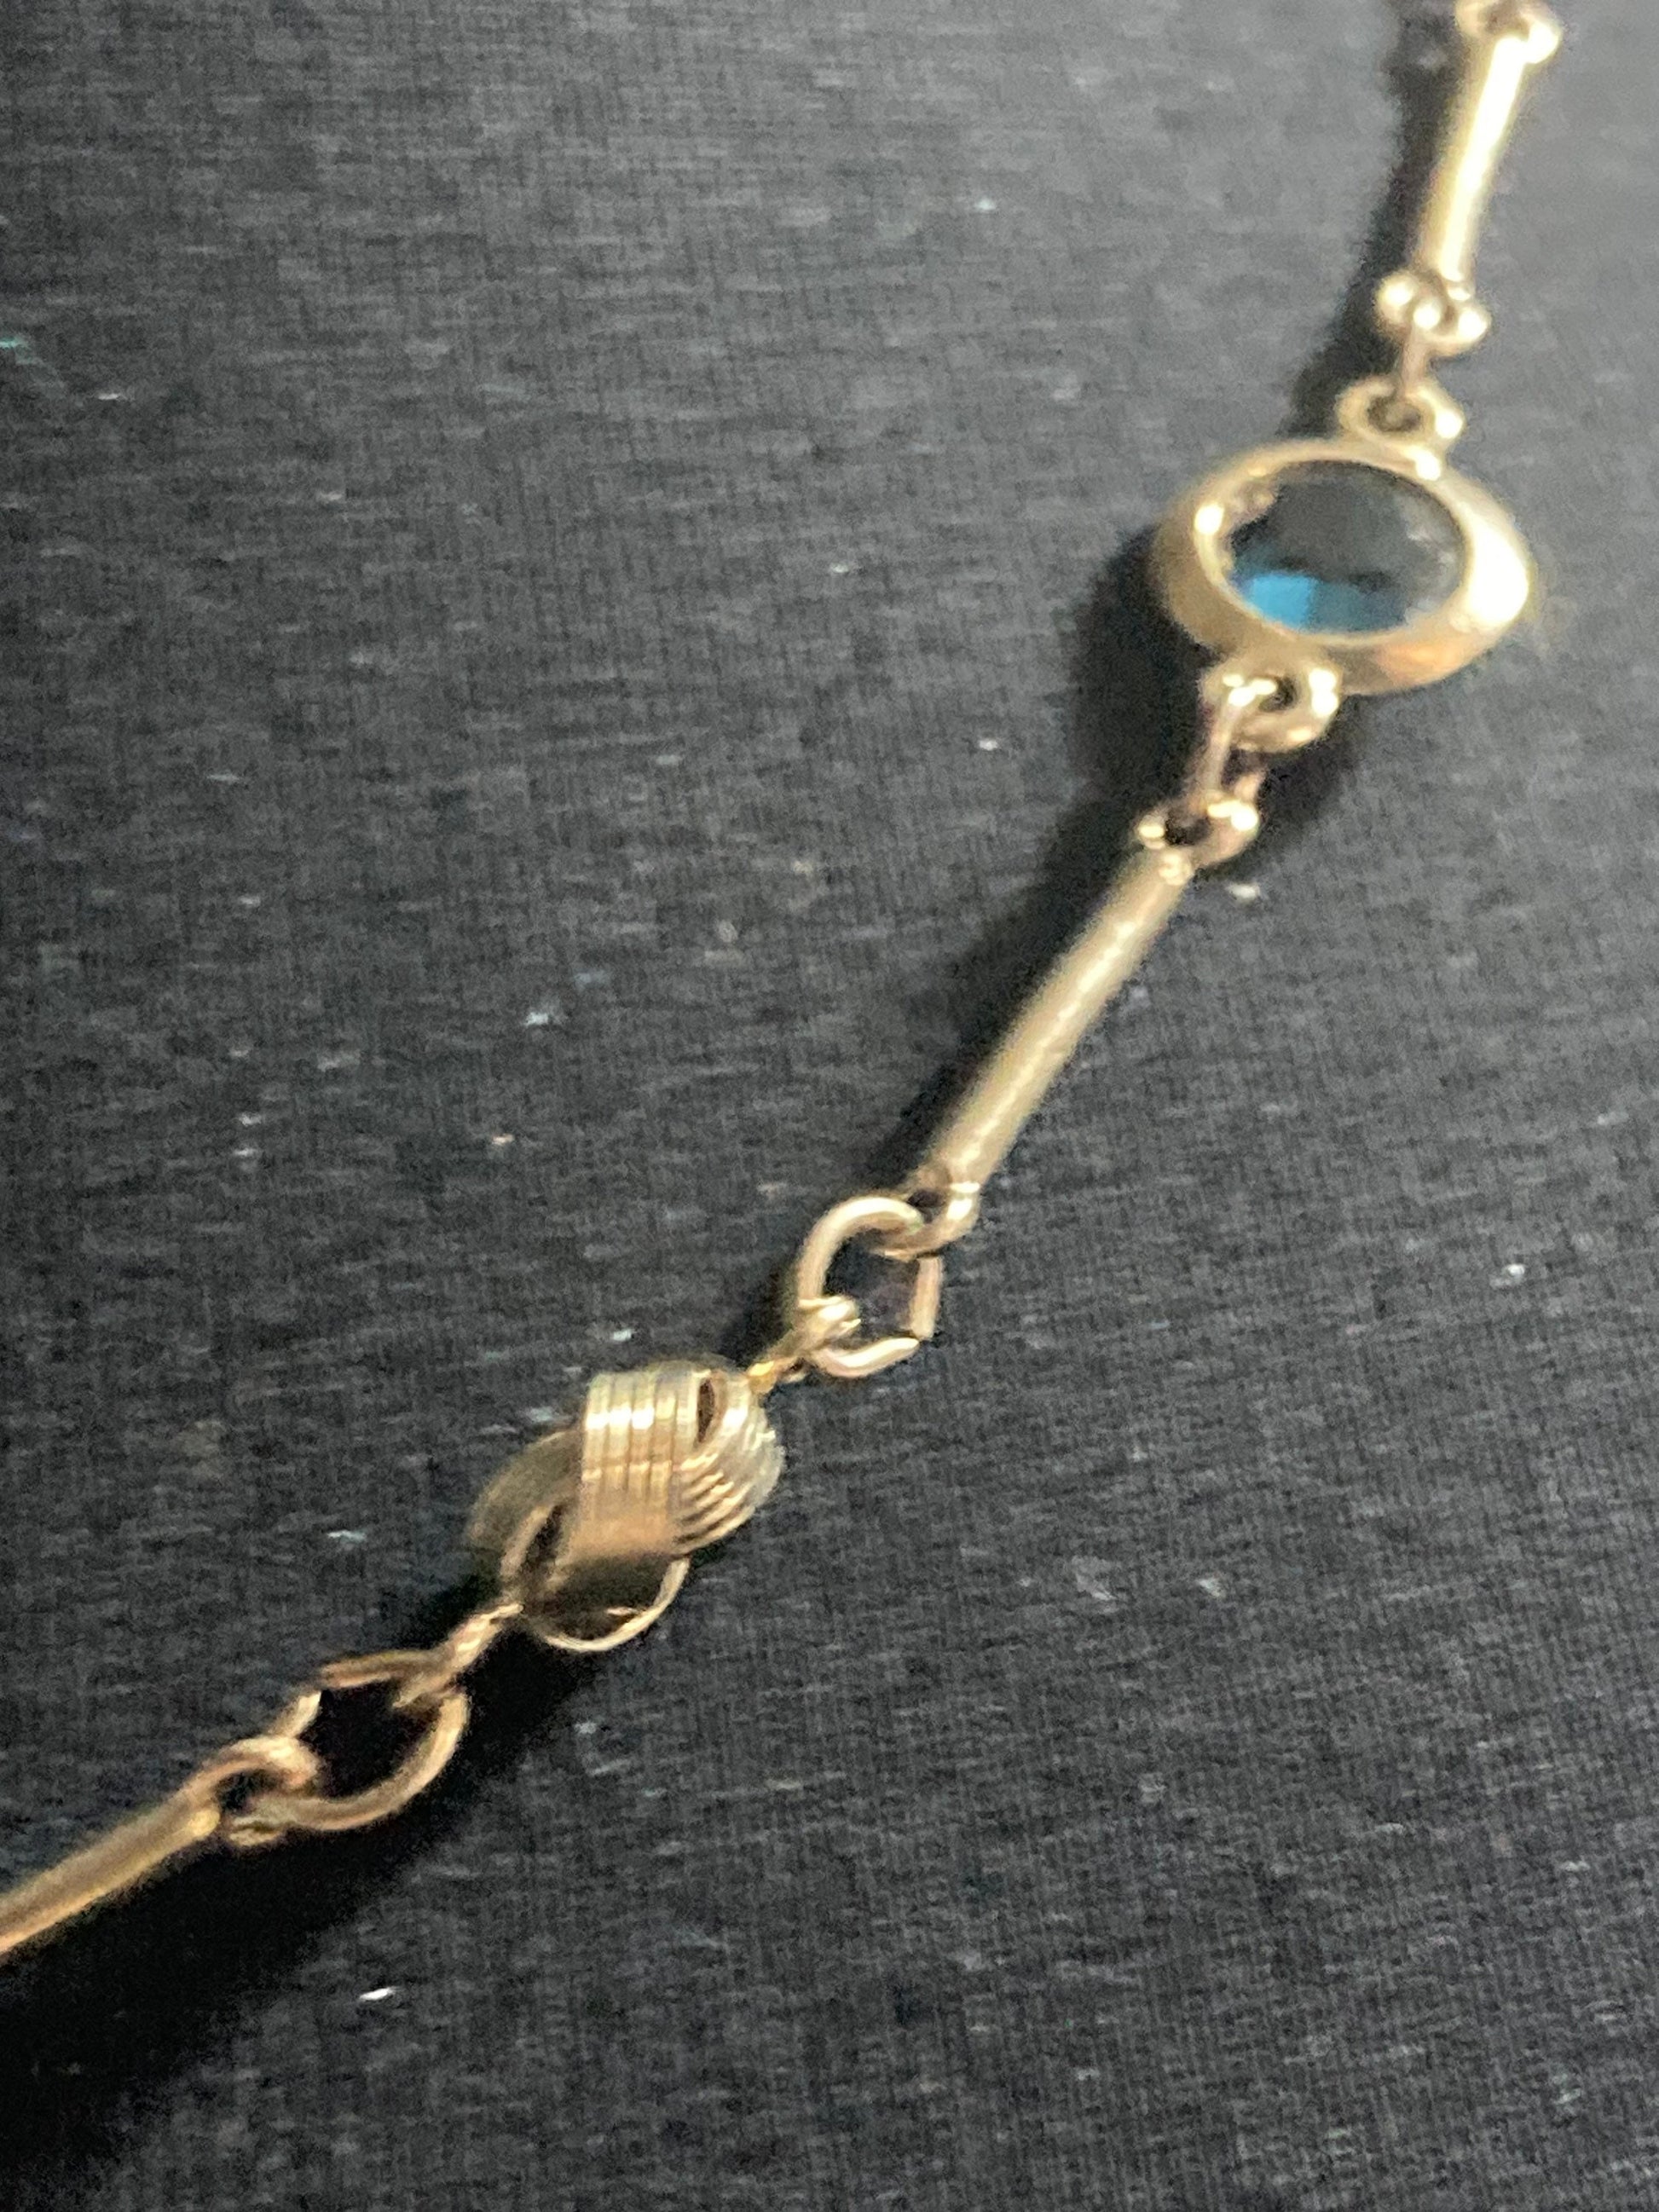 Rivière bezel set blue glass vintage gold tone chain link knot necklace 54cm